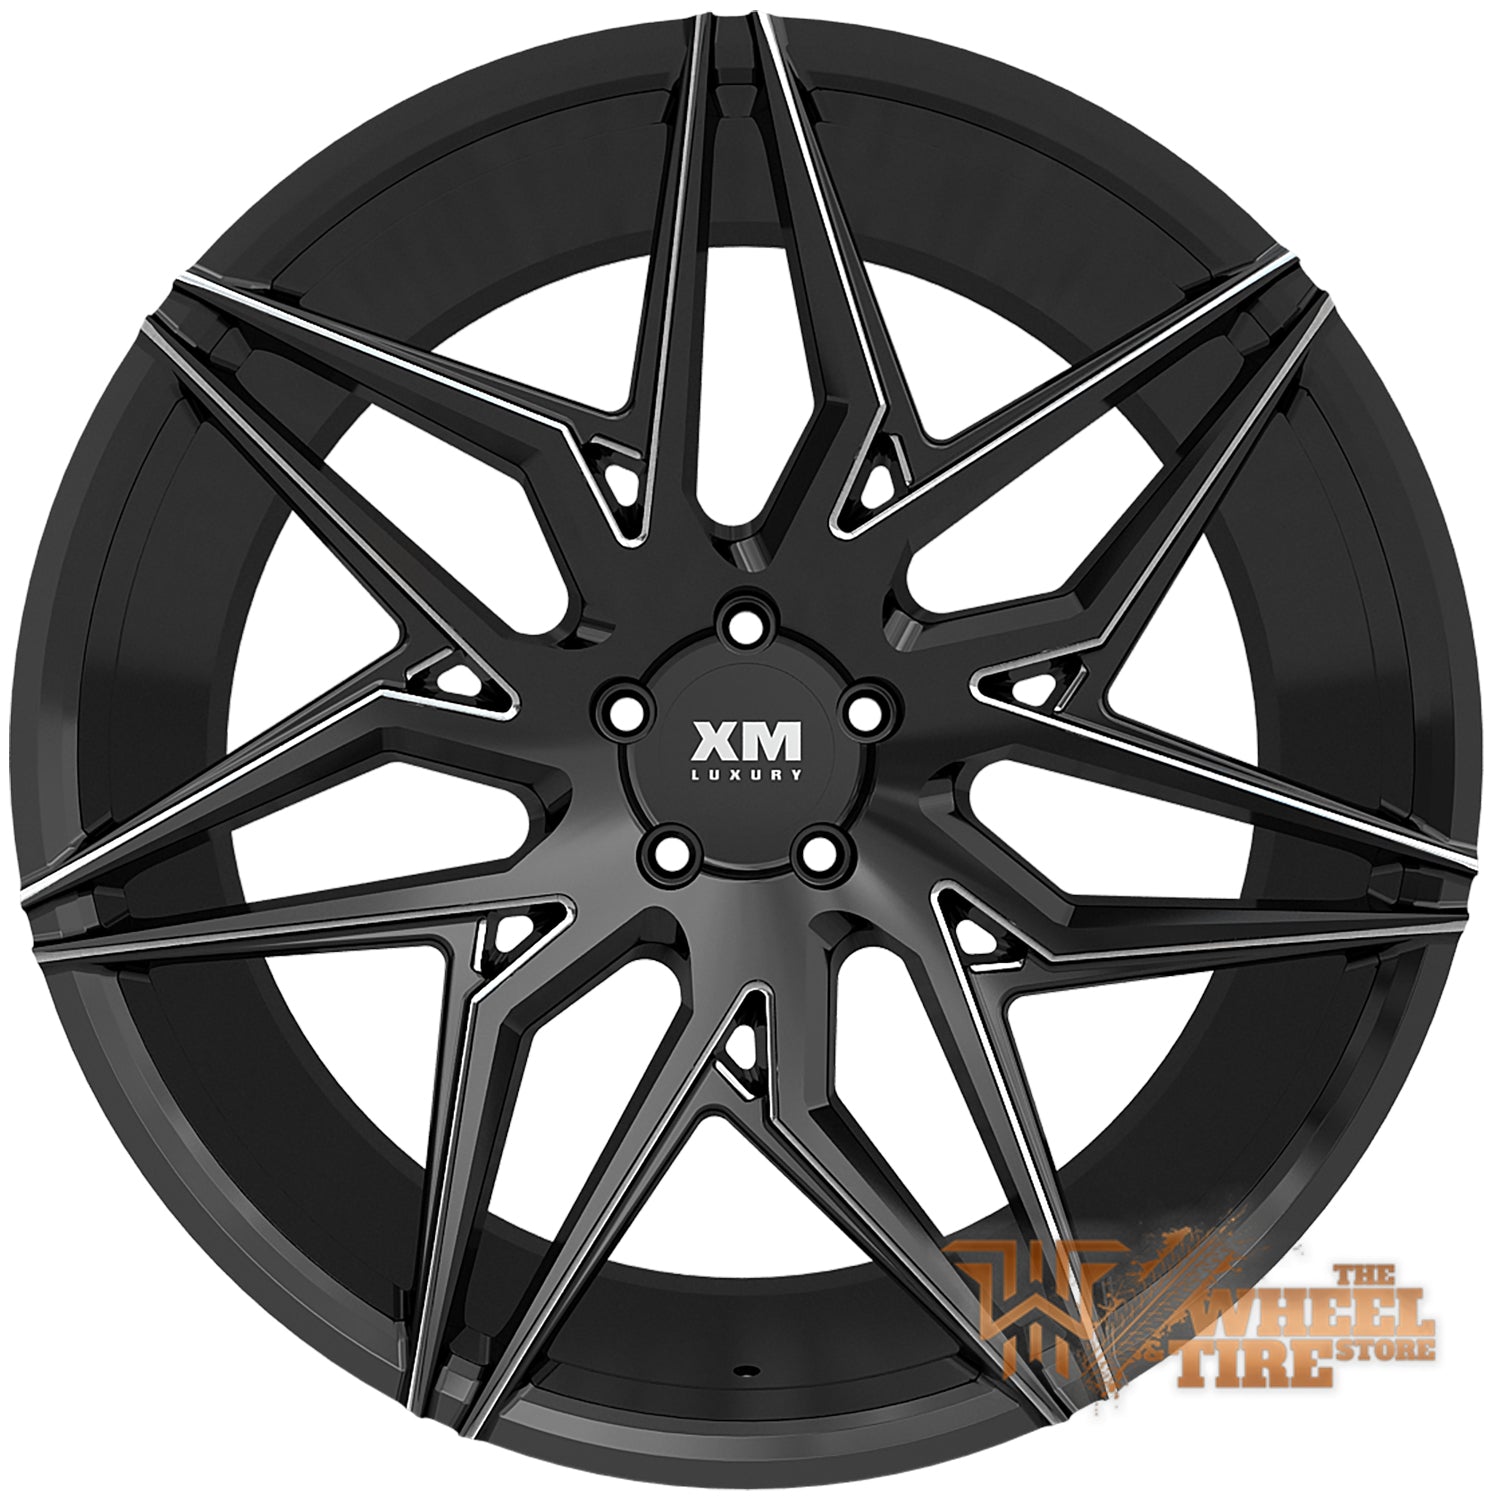 XM LUXURY XM-205 Wheel in Black Milled (Set of 4)